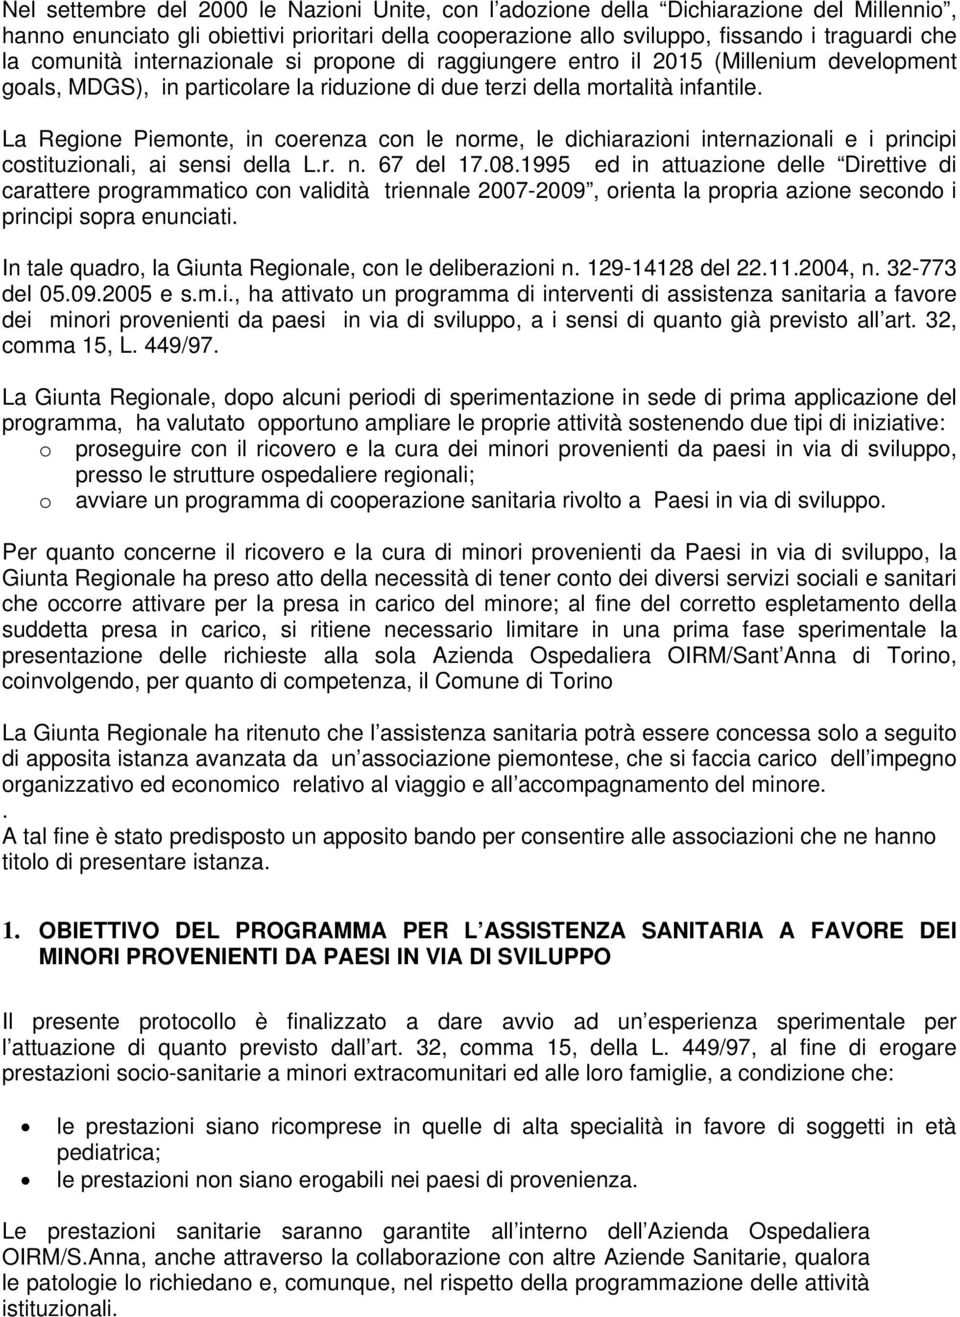 La Regione Piemonte, in coerenza con le norme, le dichiarazioni internazionali e i principi costituzionali, ai sensi della L.r. n. 67 del 17.08.